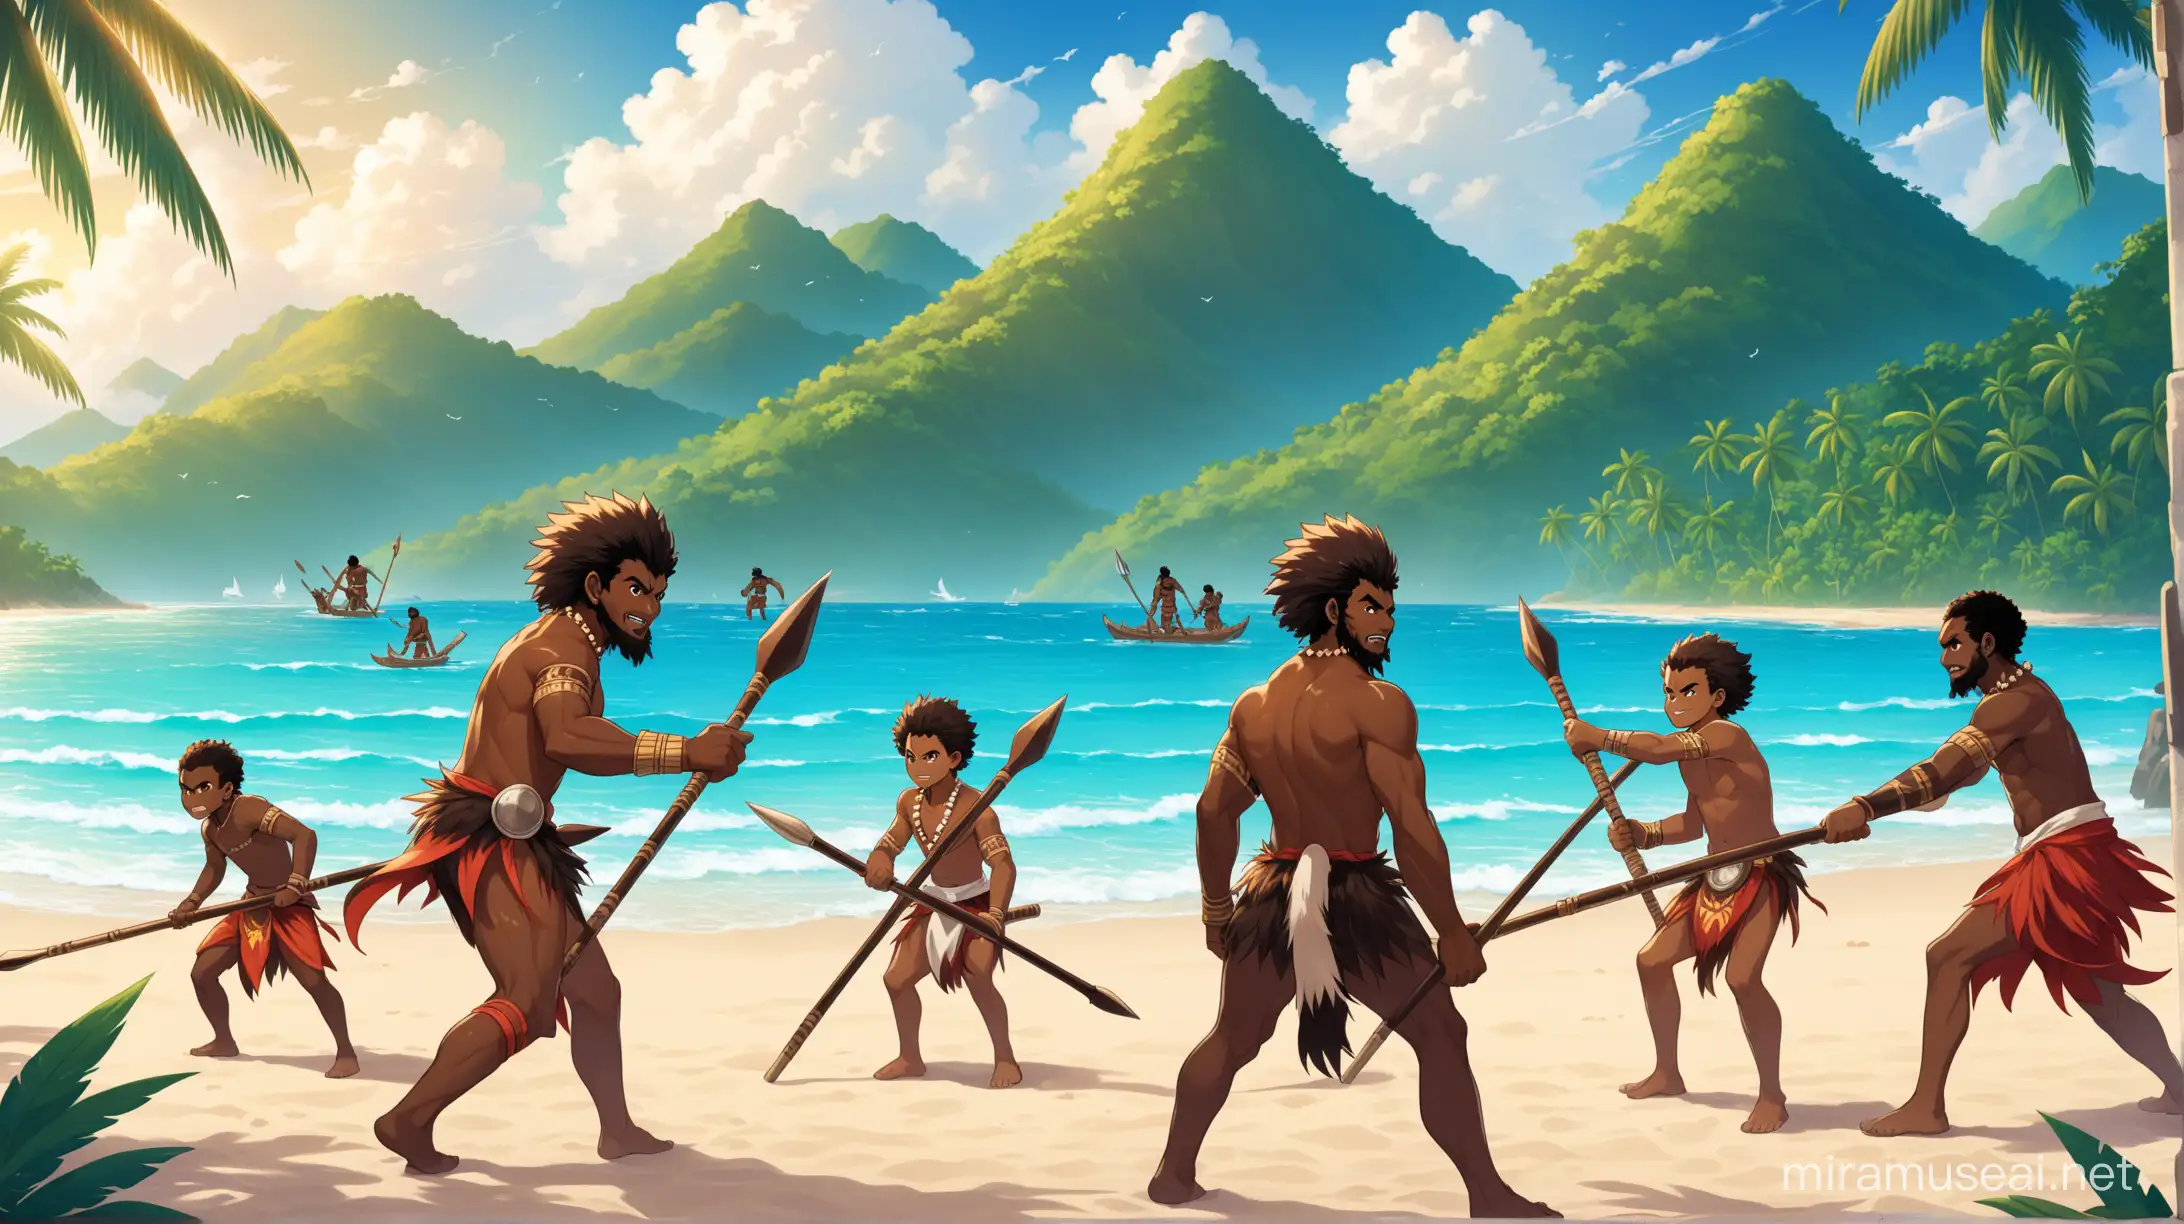 Personnes mélanésiennes de type masculin de tout âge (entre 15ans et 30 ans) devant la mer, sur la plage avec des lances et des casse-têtes (originaire de Mélanésie) se préparant à l'attaque de face à une montagne, avec un style wakfu